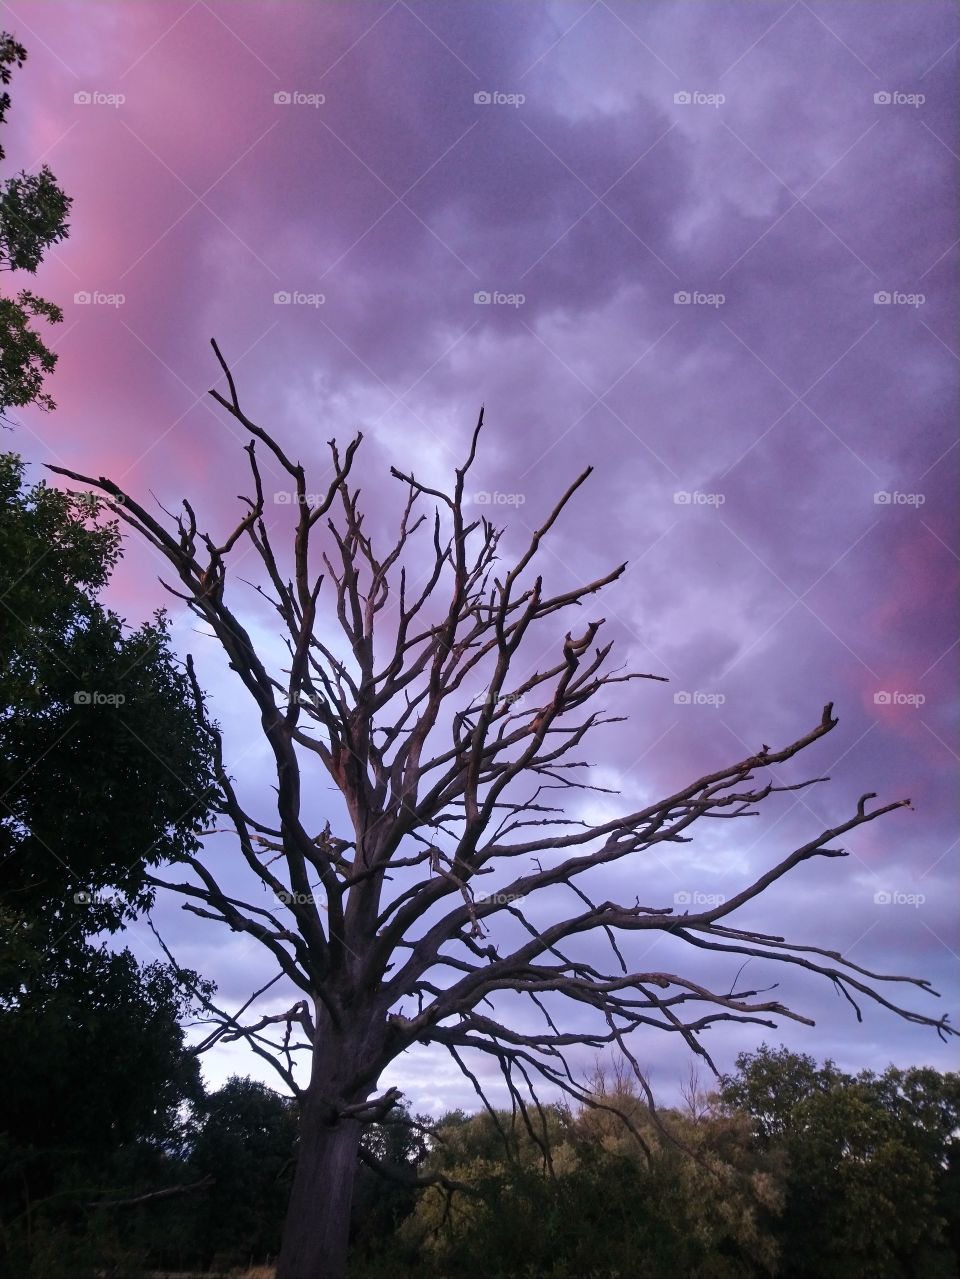 Dead tree, sunset